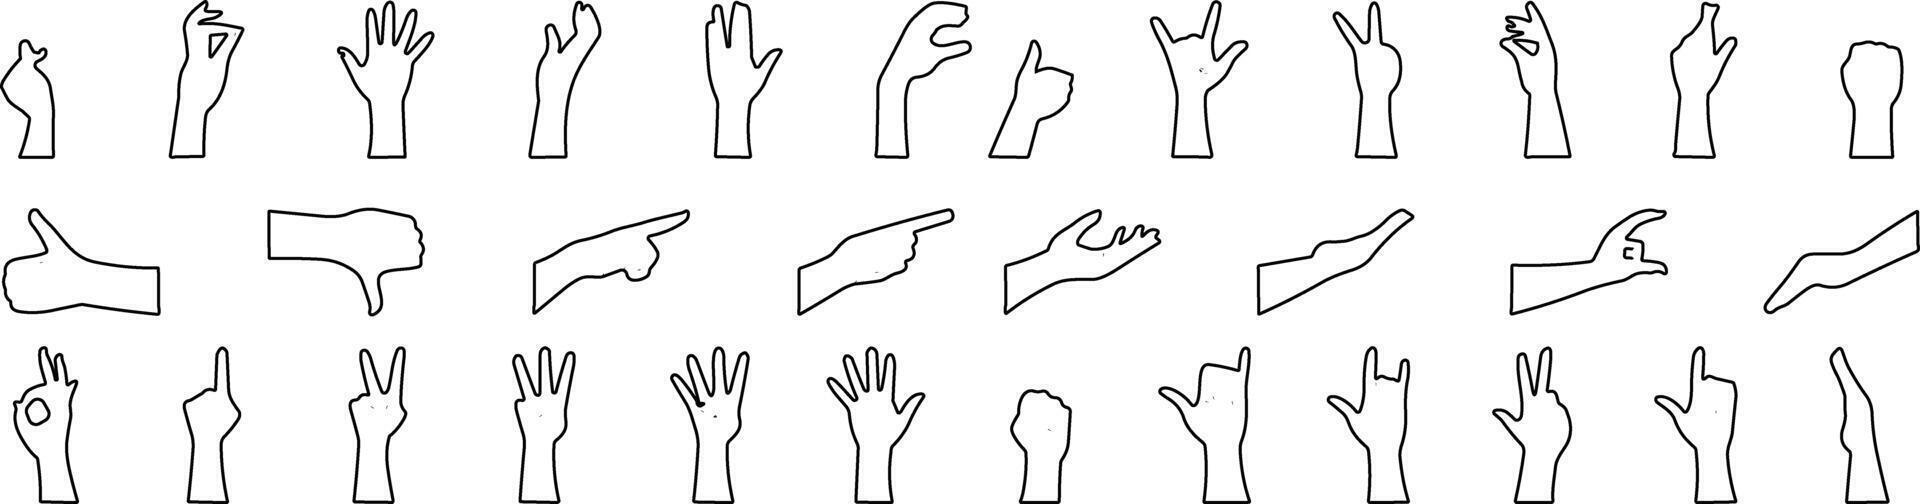 hand- gebaar icoon set. allemaal type van hand- emoji's, gebaren, stickers, emoticons lijn vector illustratie symbolen. handen, handdrukken, spier, vinger, vuist, richting, Leuk vinden, in tegenstelling tot, vingers verzameling